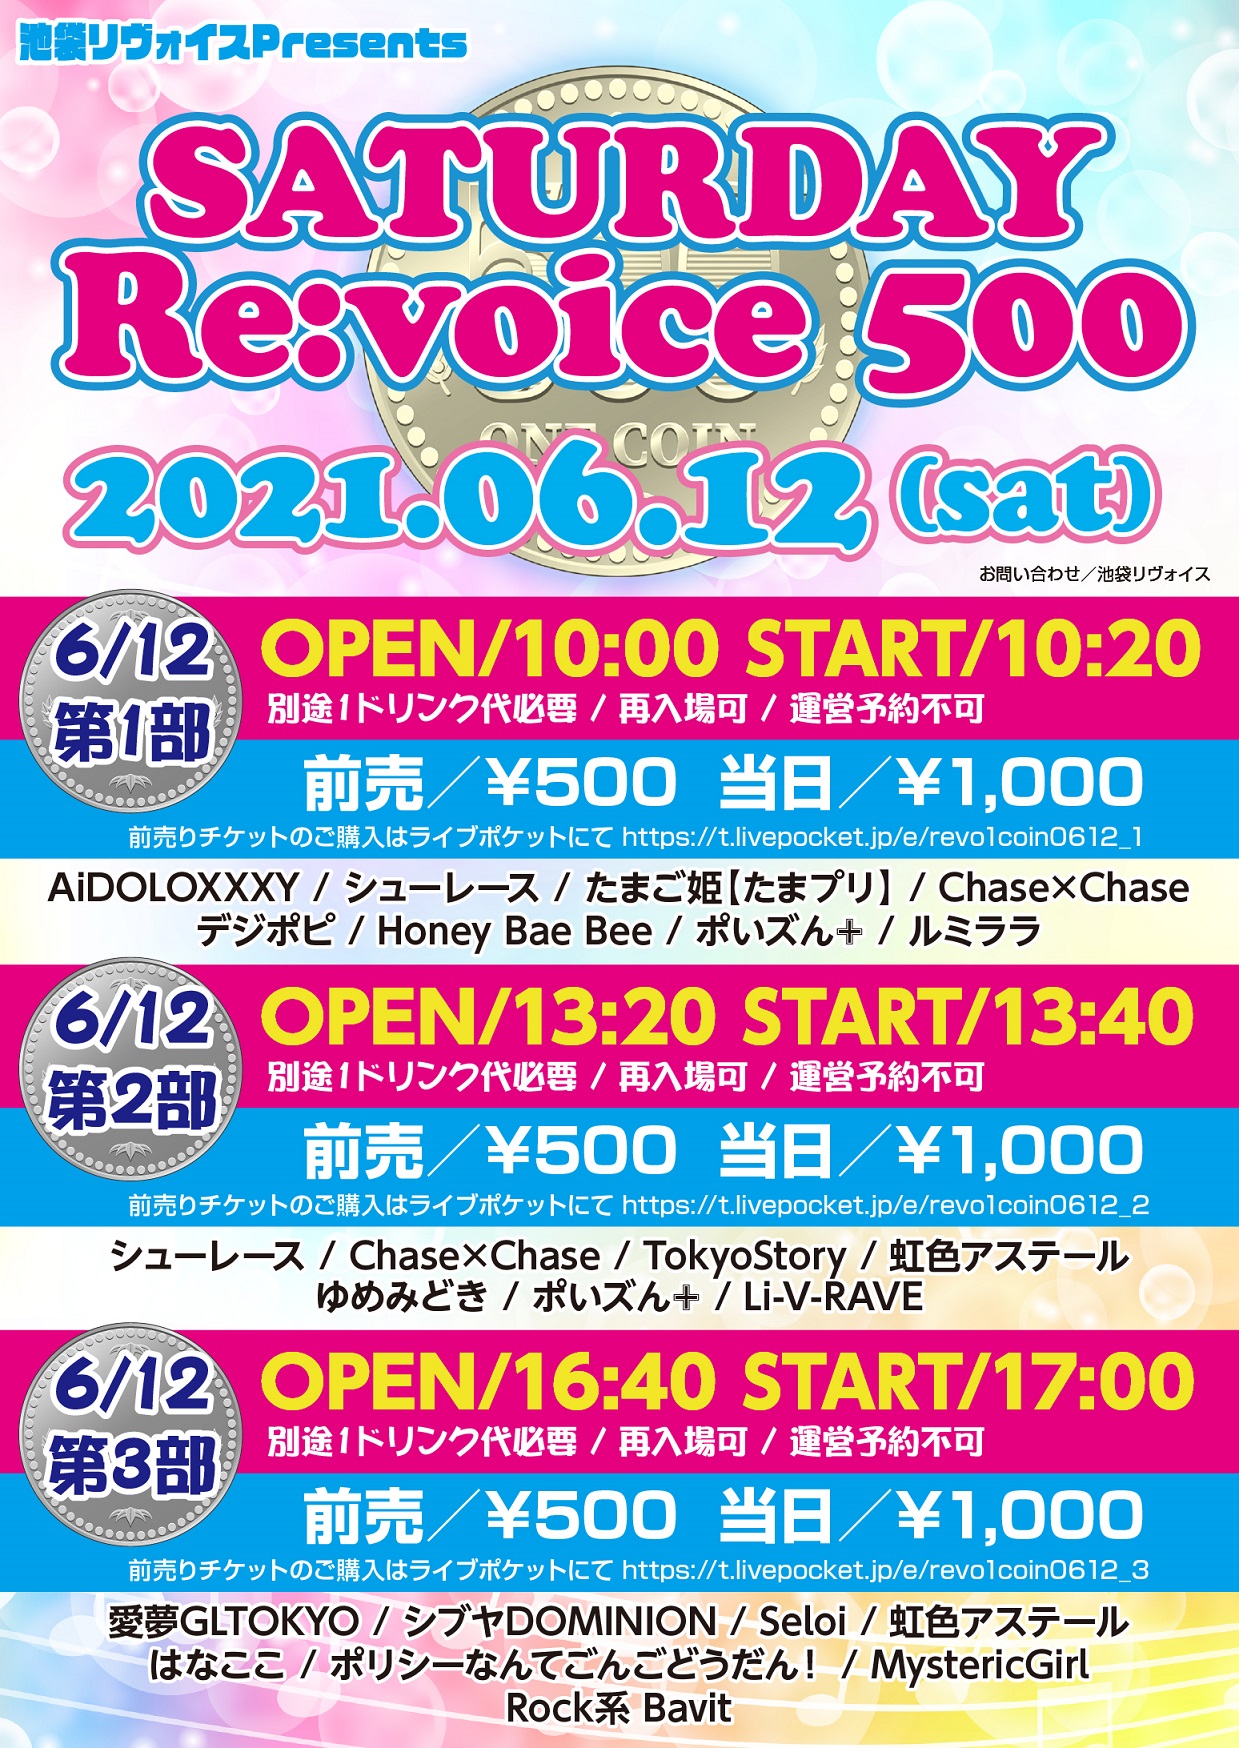 【第二部】SATURDAY Re:voice 500